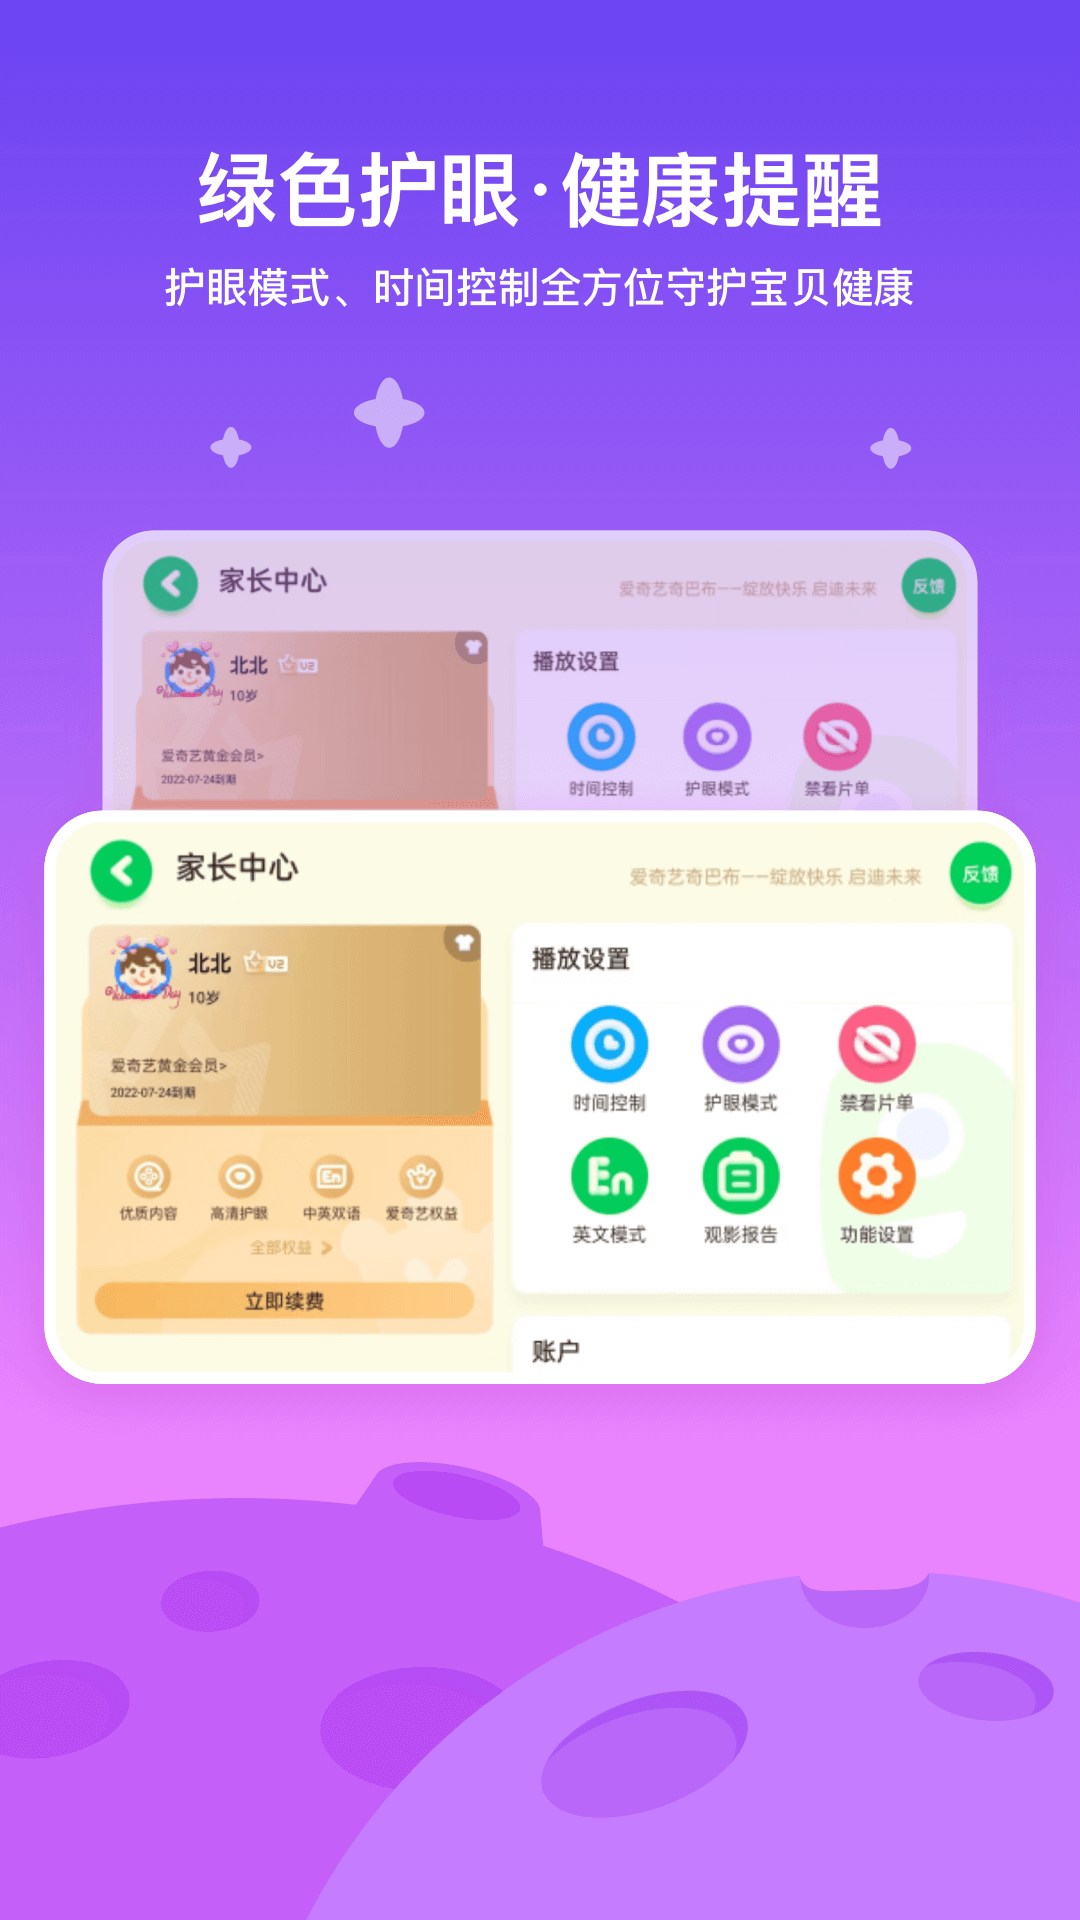 奇巴布爱奇艺儿童版app